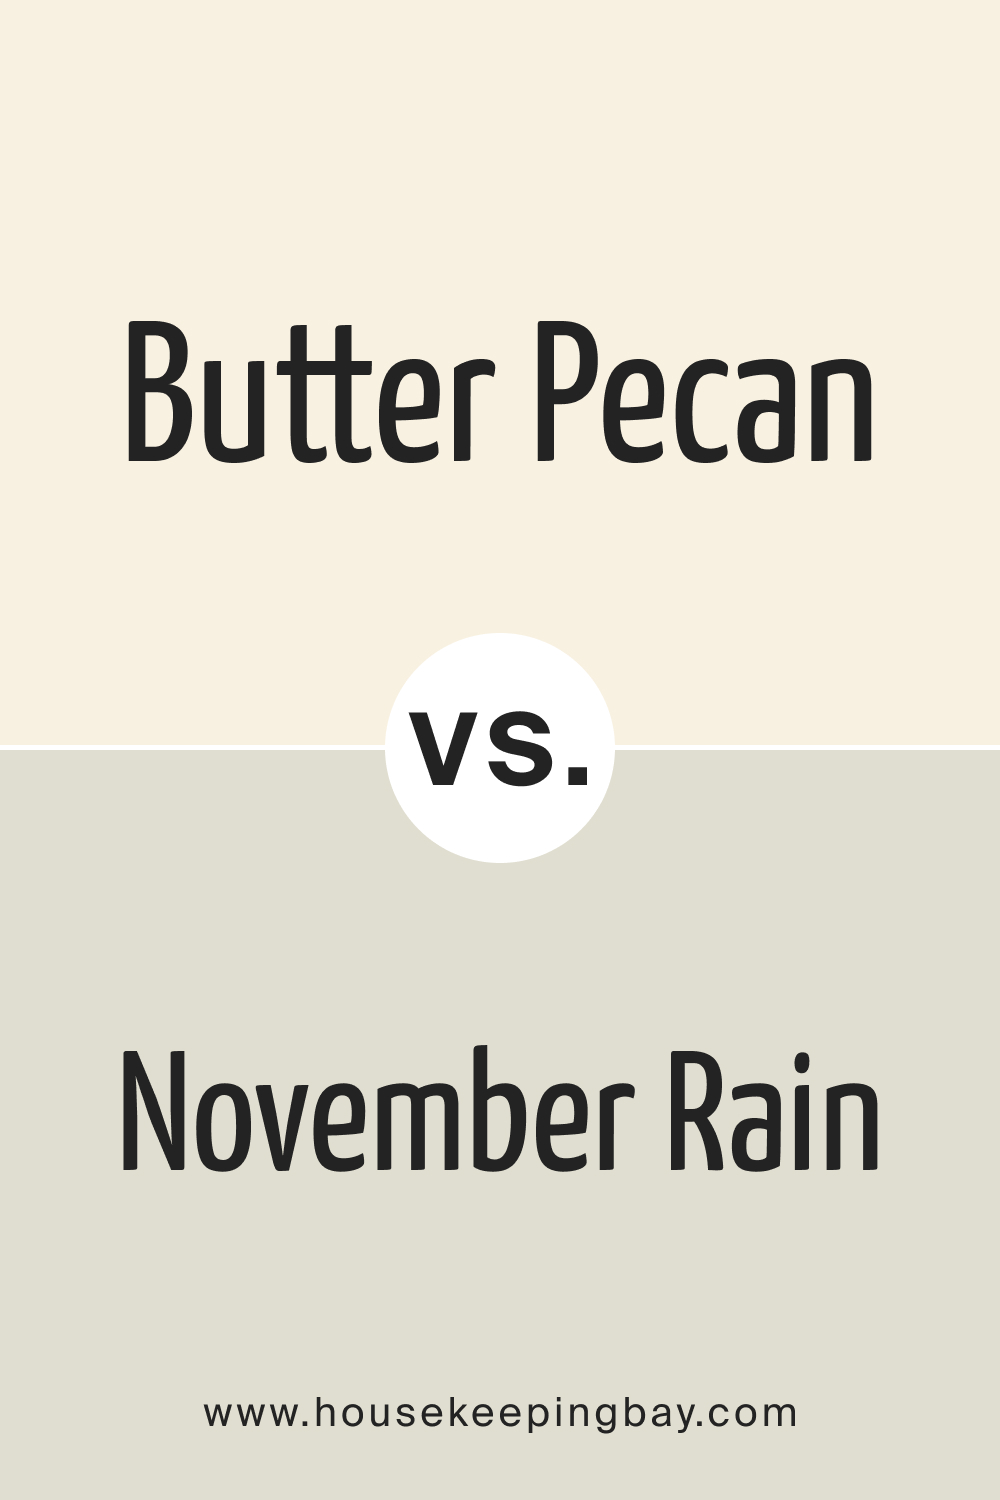 Butter Pecan OC 89 vs. OC 50 November Rain